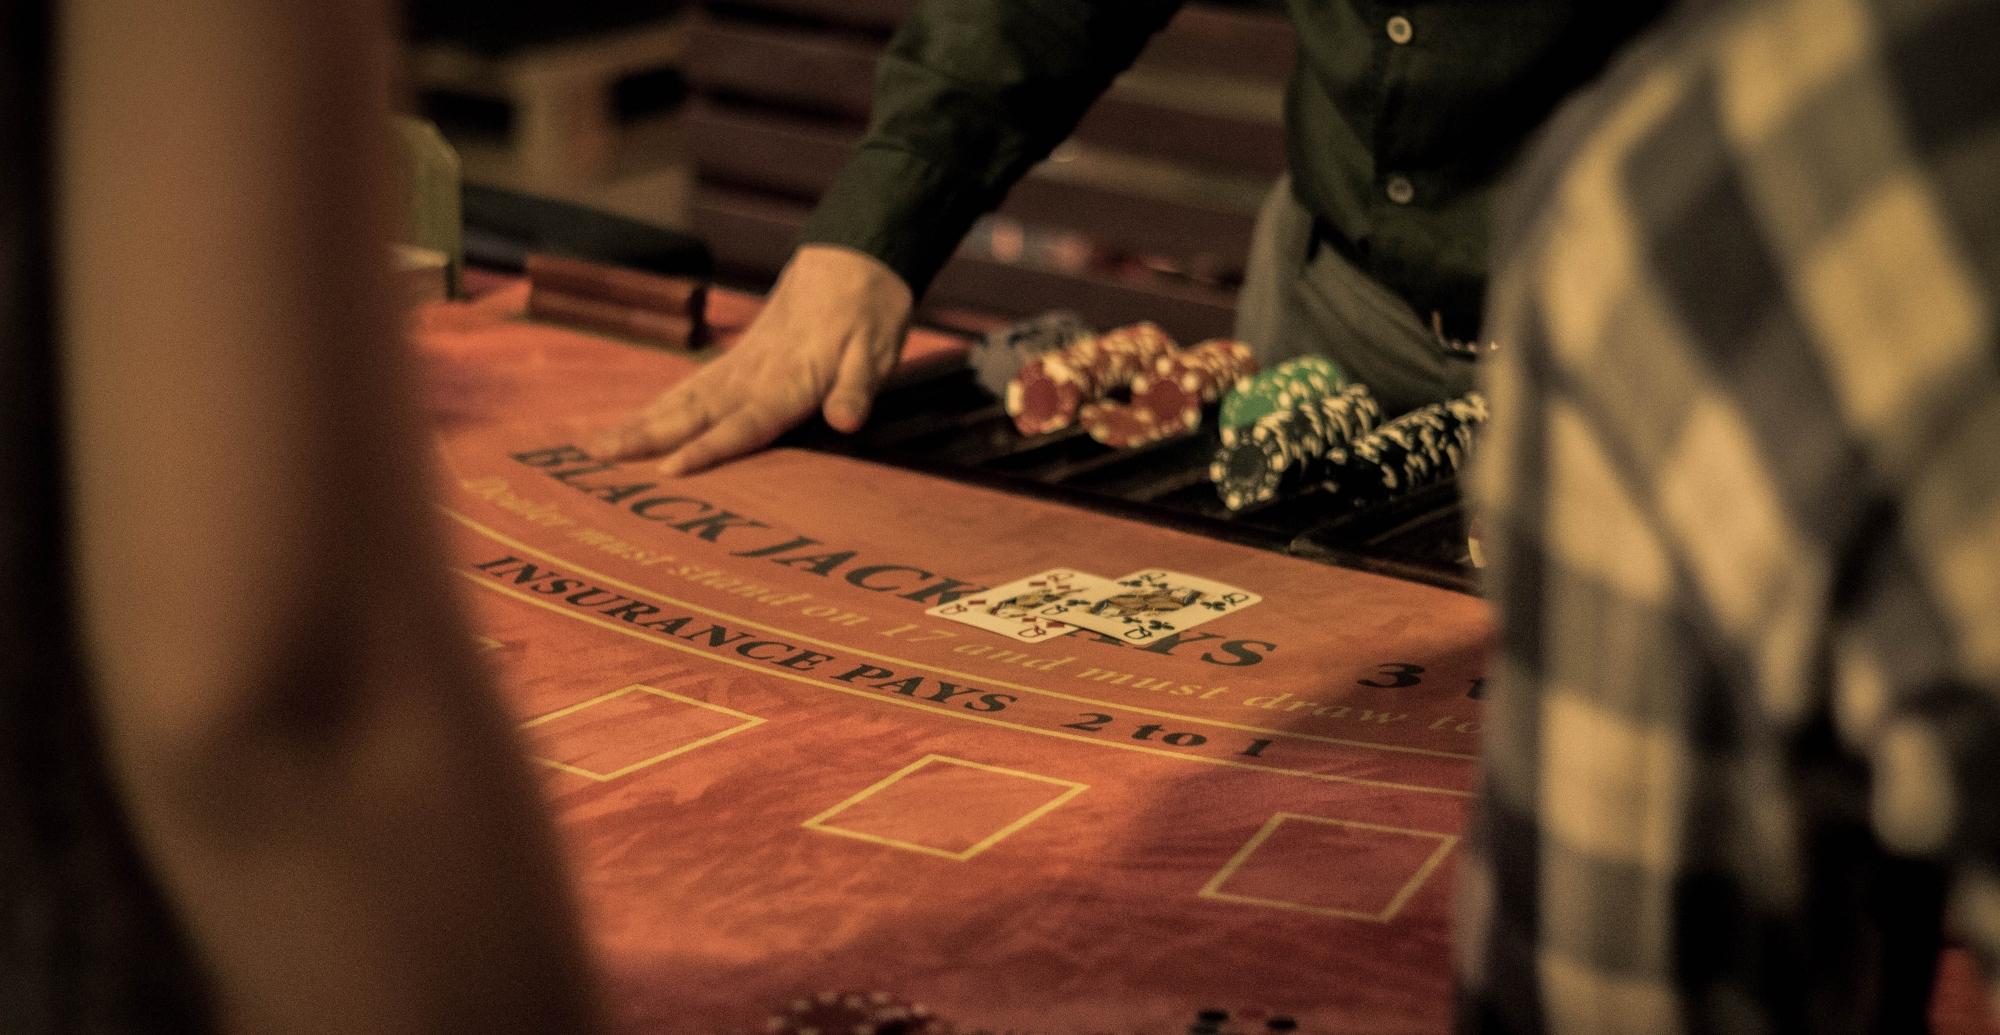 Музей азартных игр со скидкой 30%